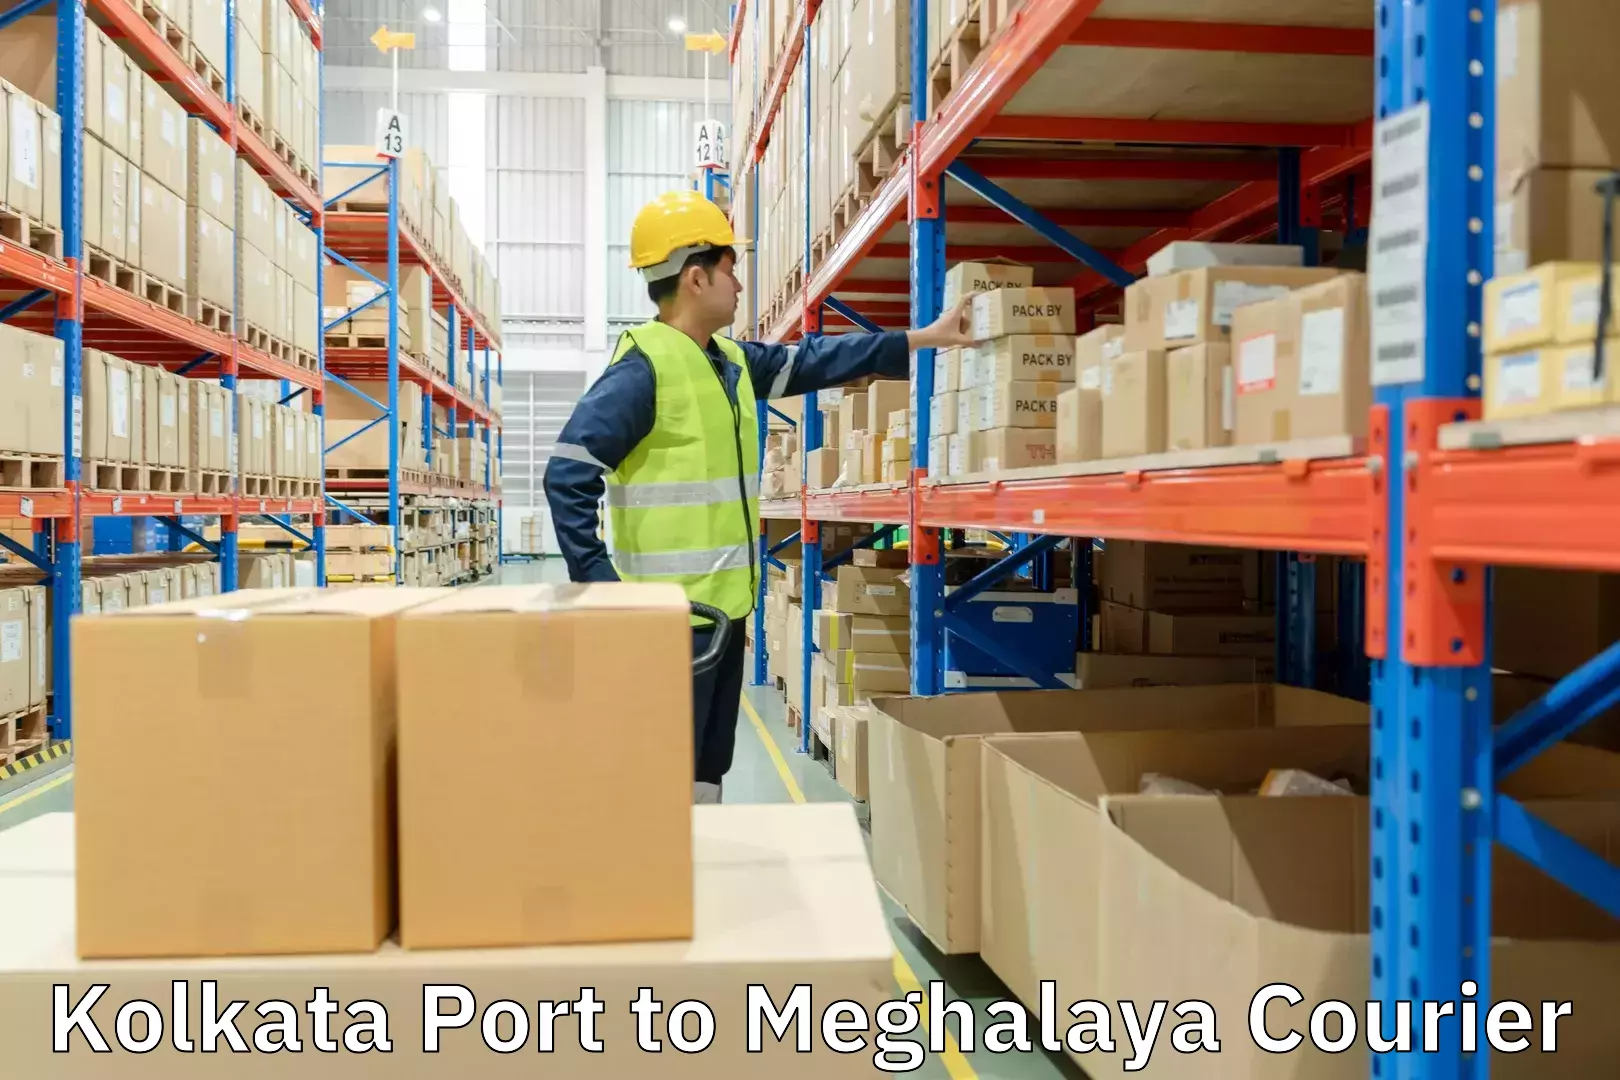 Door-to-door freight service Kolkata Port to Nongstoin